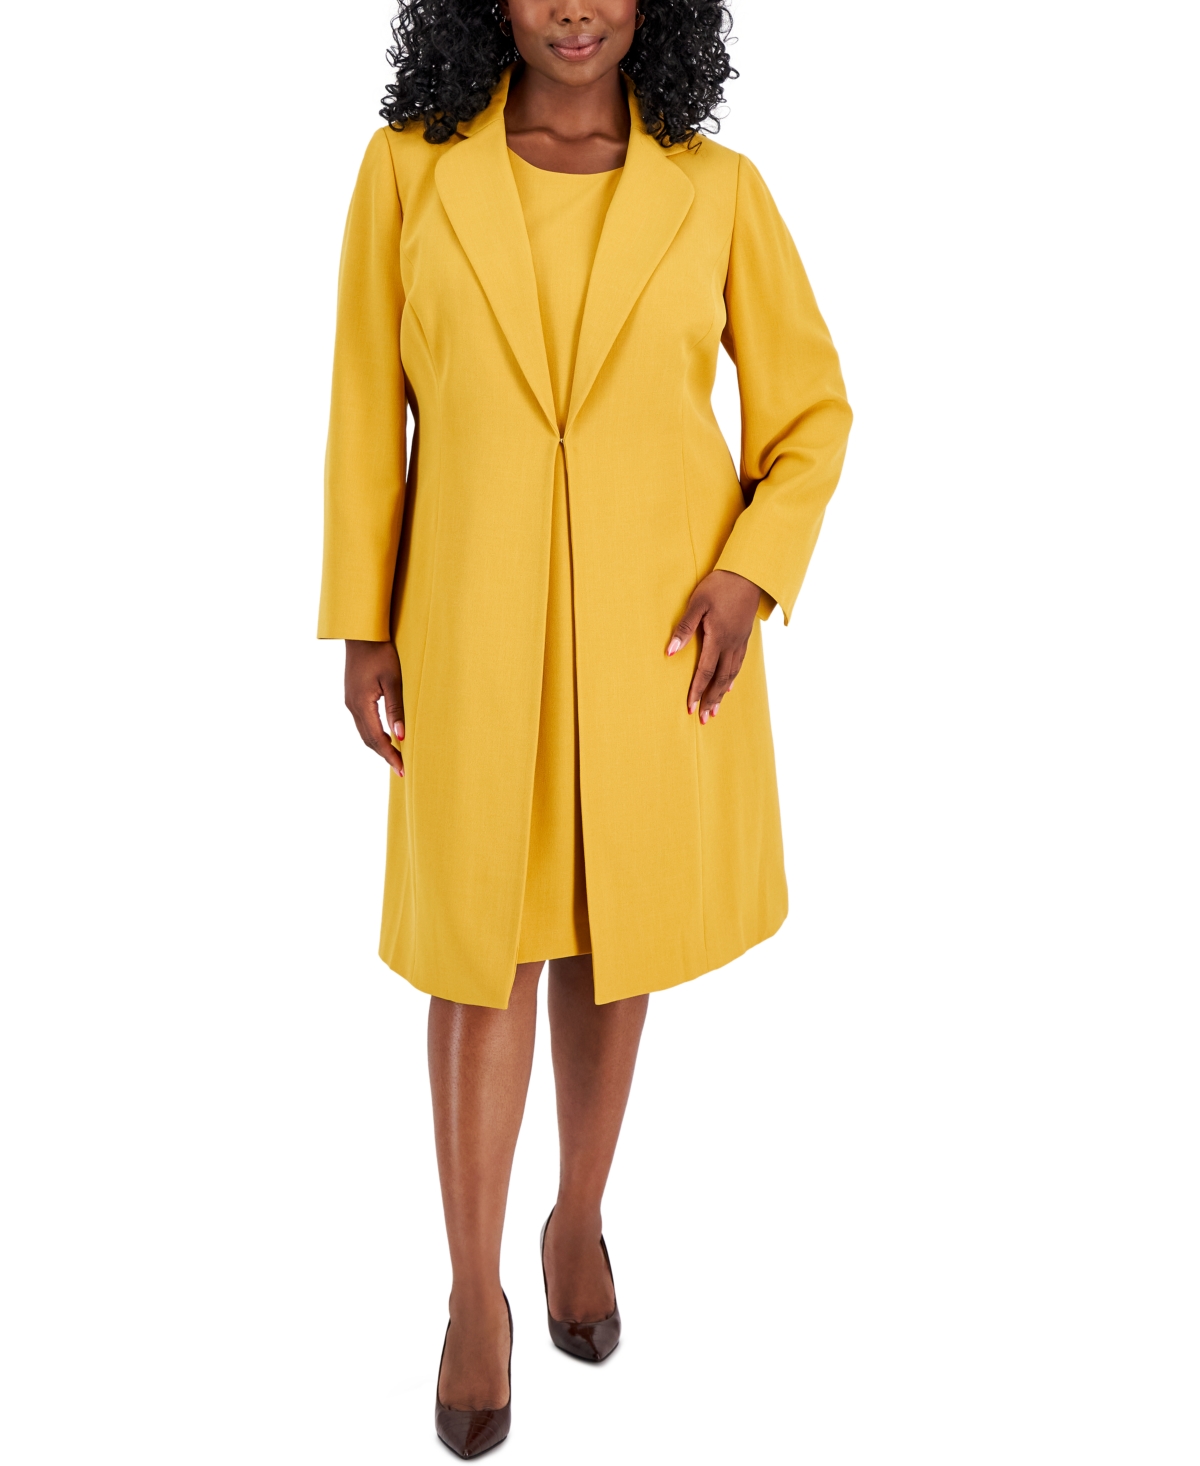 Plus Size Topper Jacket & Sheath Dress Suit - Harvest Gold